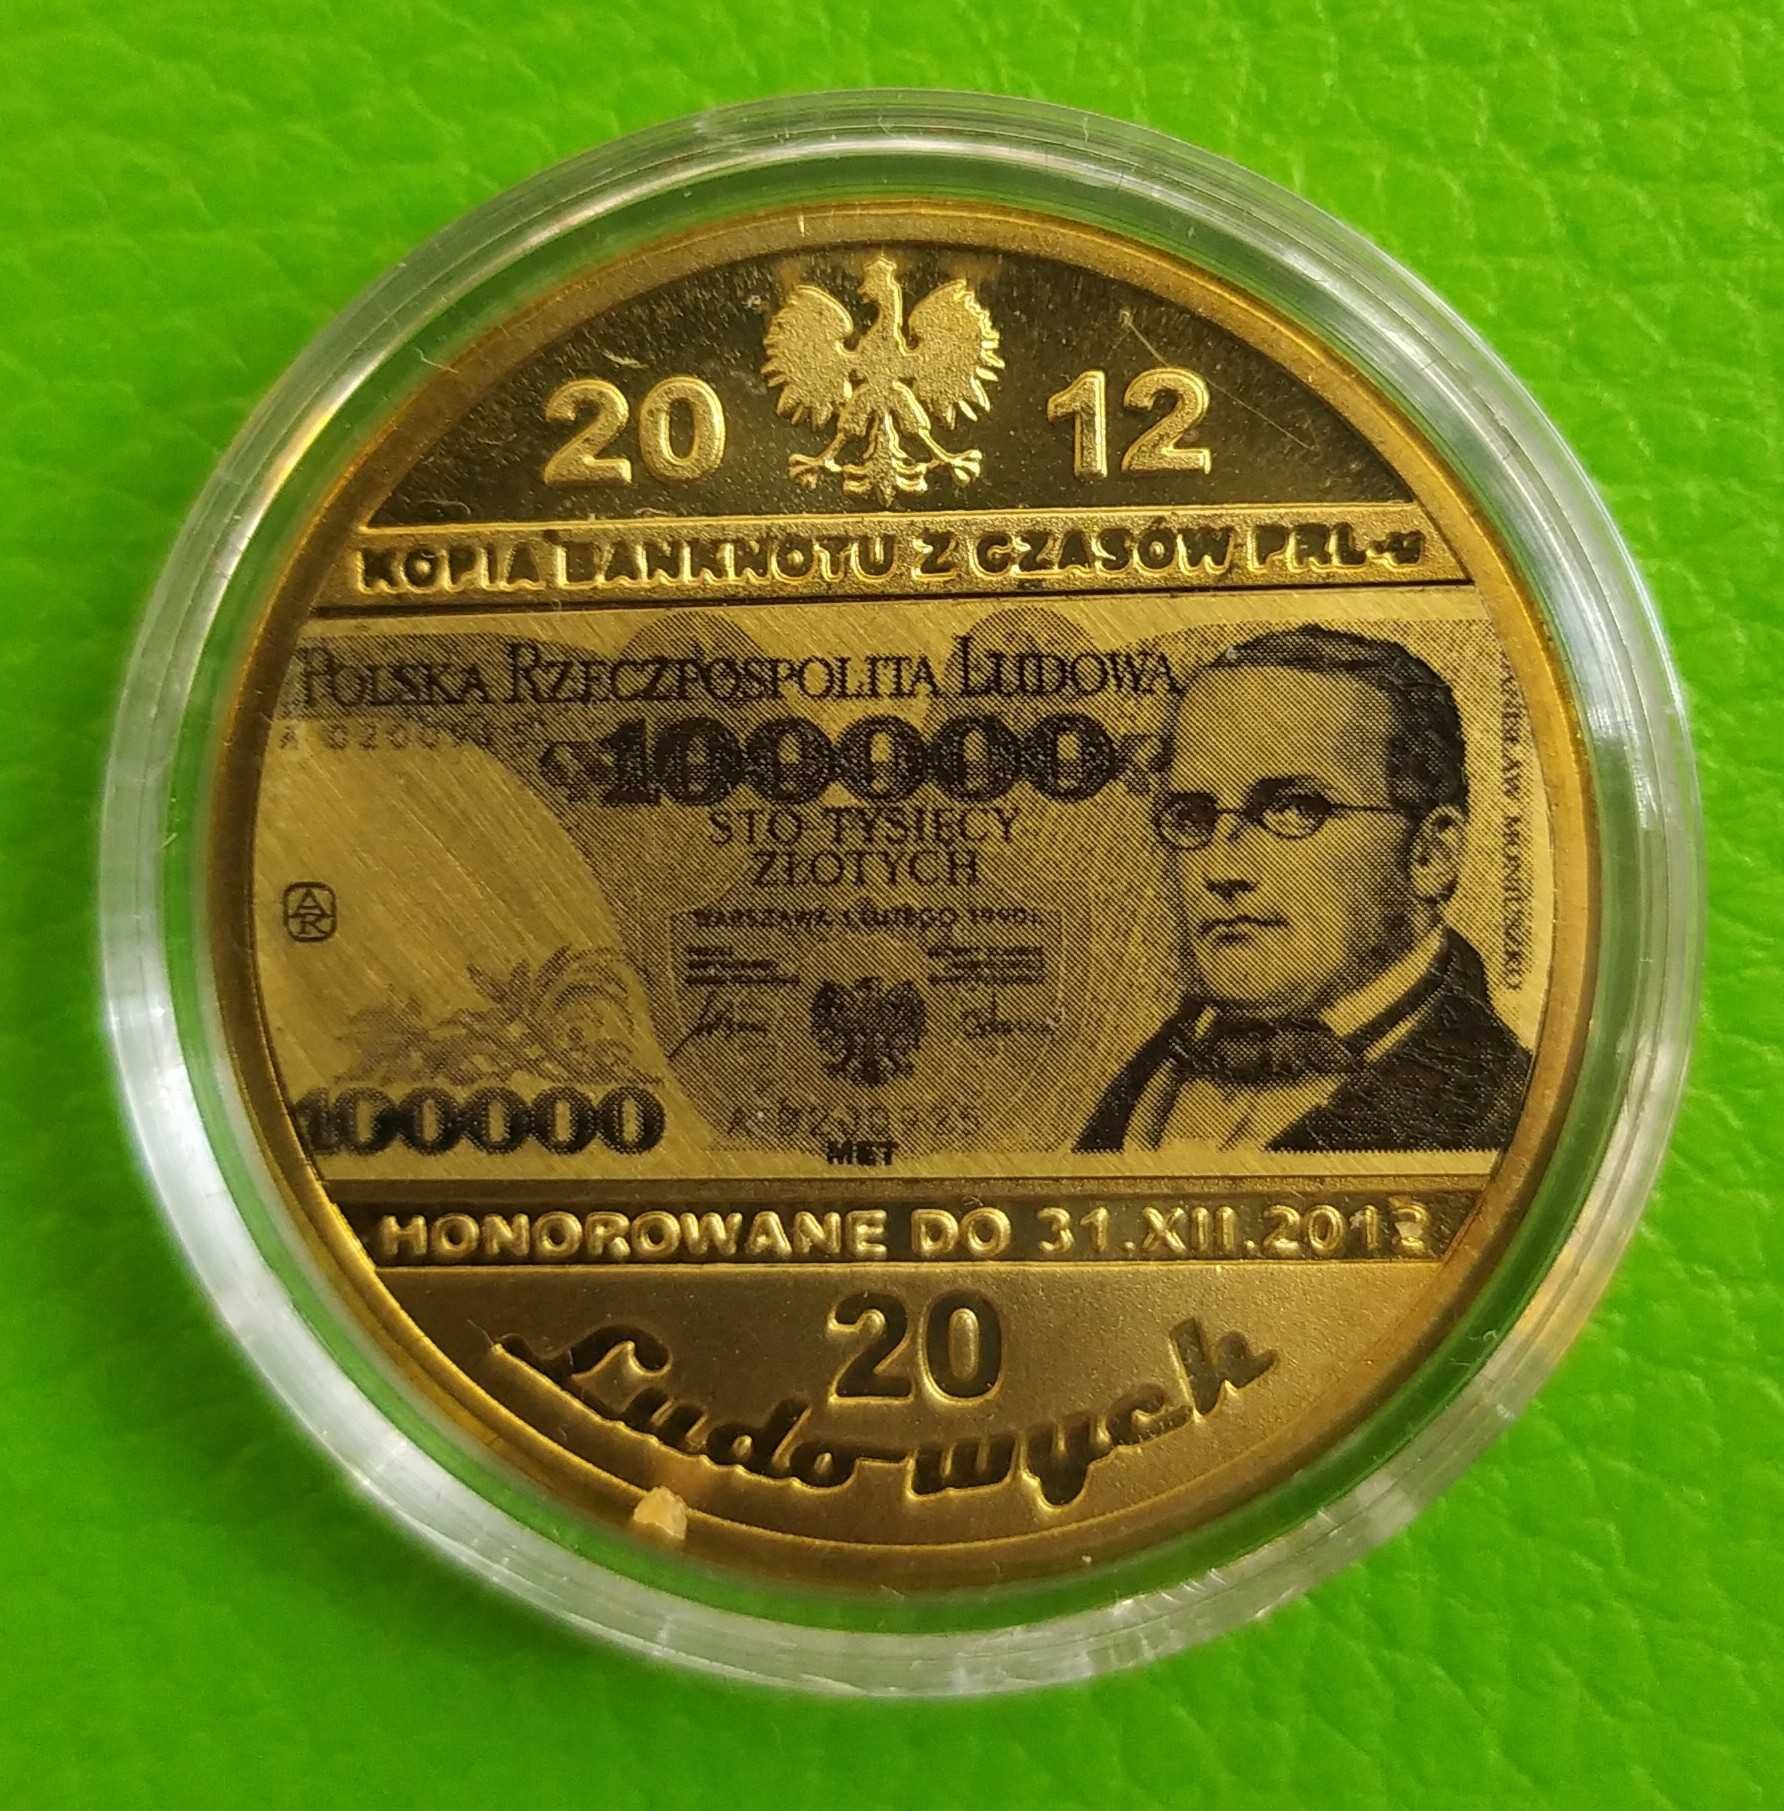 9 x Banknot Moneta 20 PRL 100 200 , 5000 , 1000 Milion Cu Platynowana